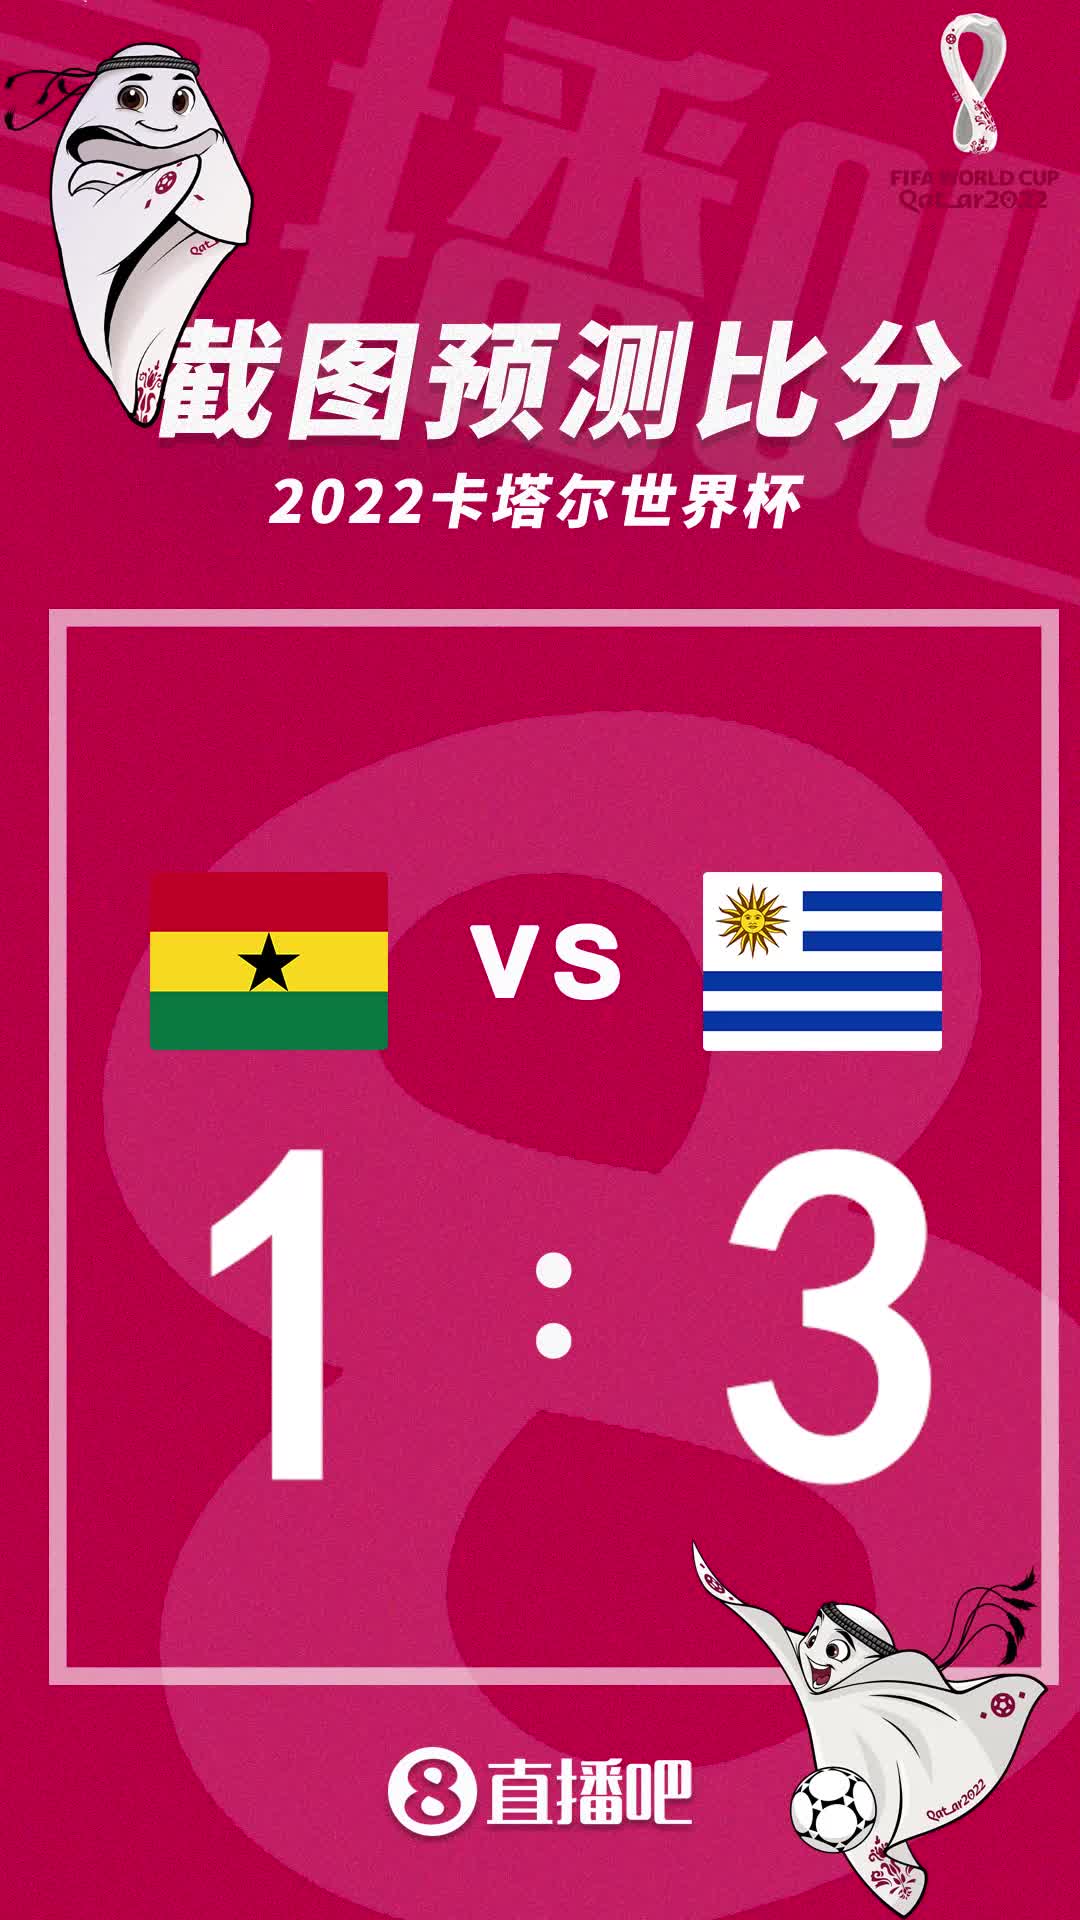 复仇之战？截图预测加纳vs乌拉圭比分